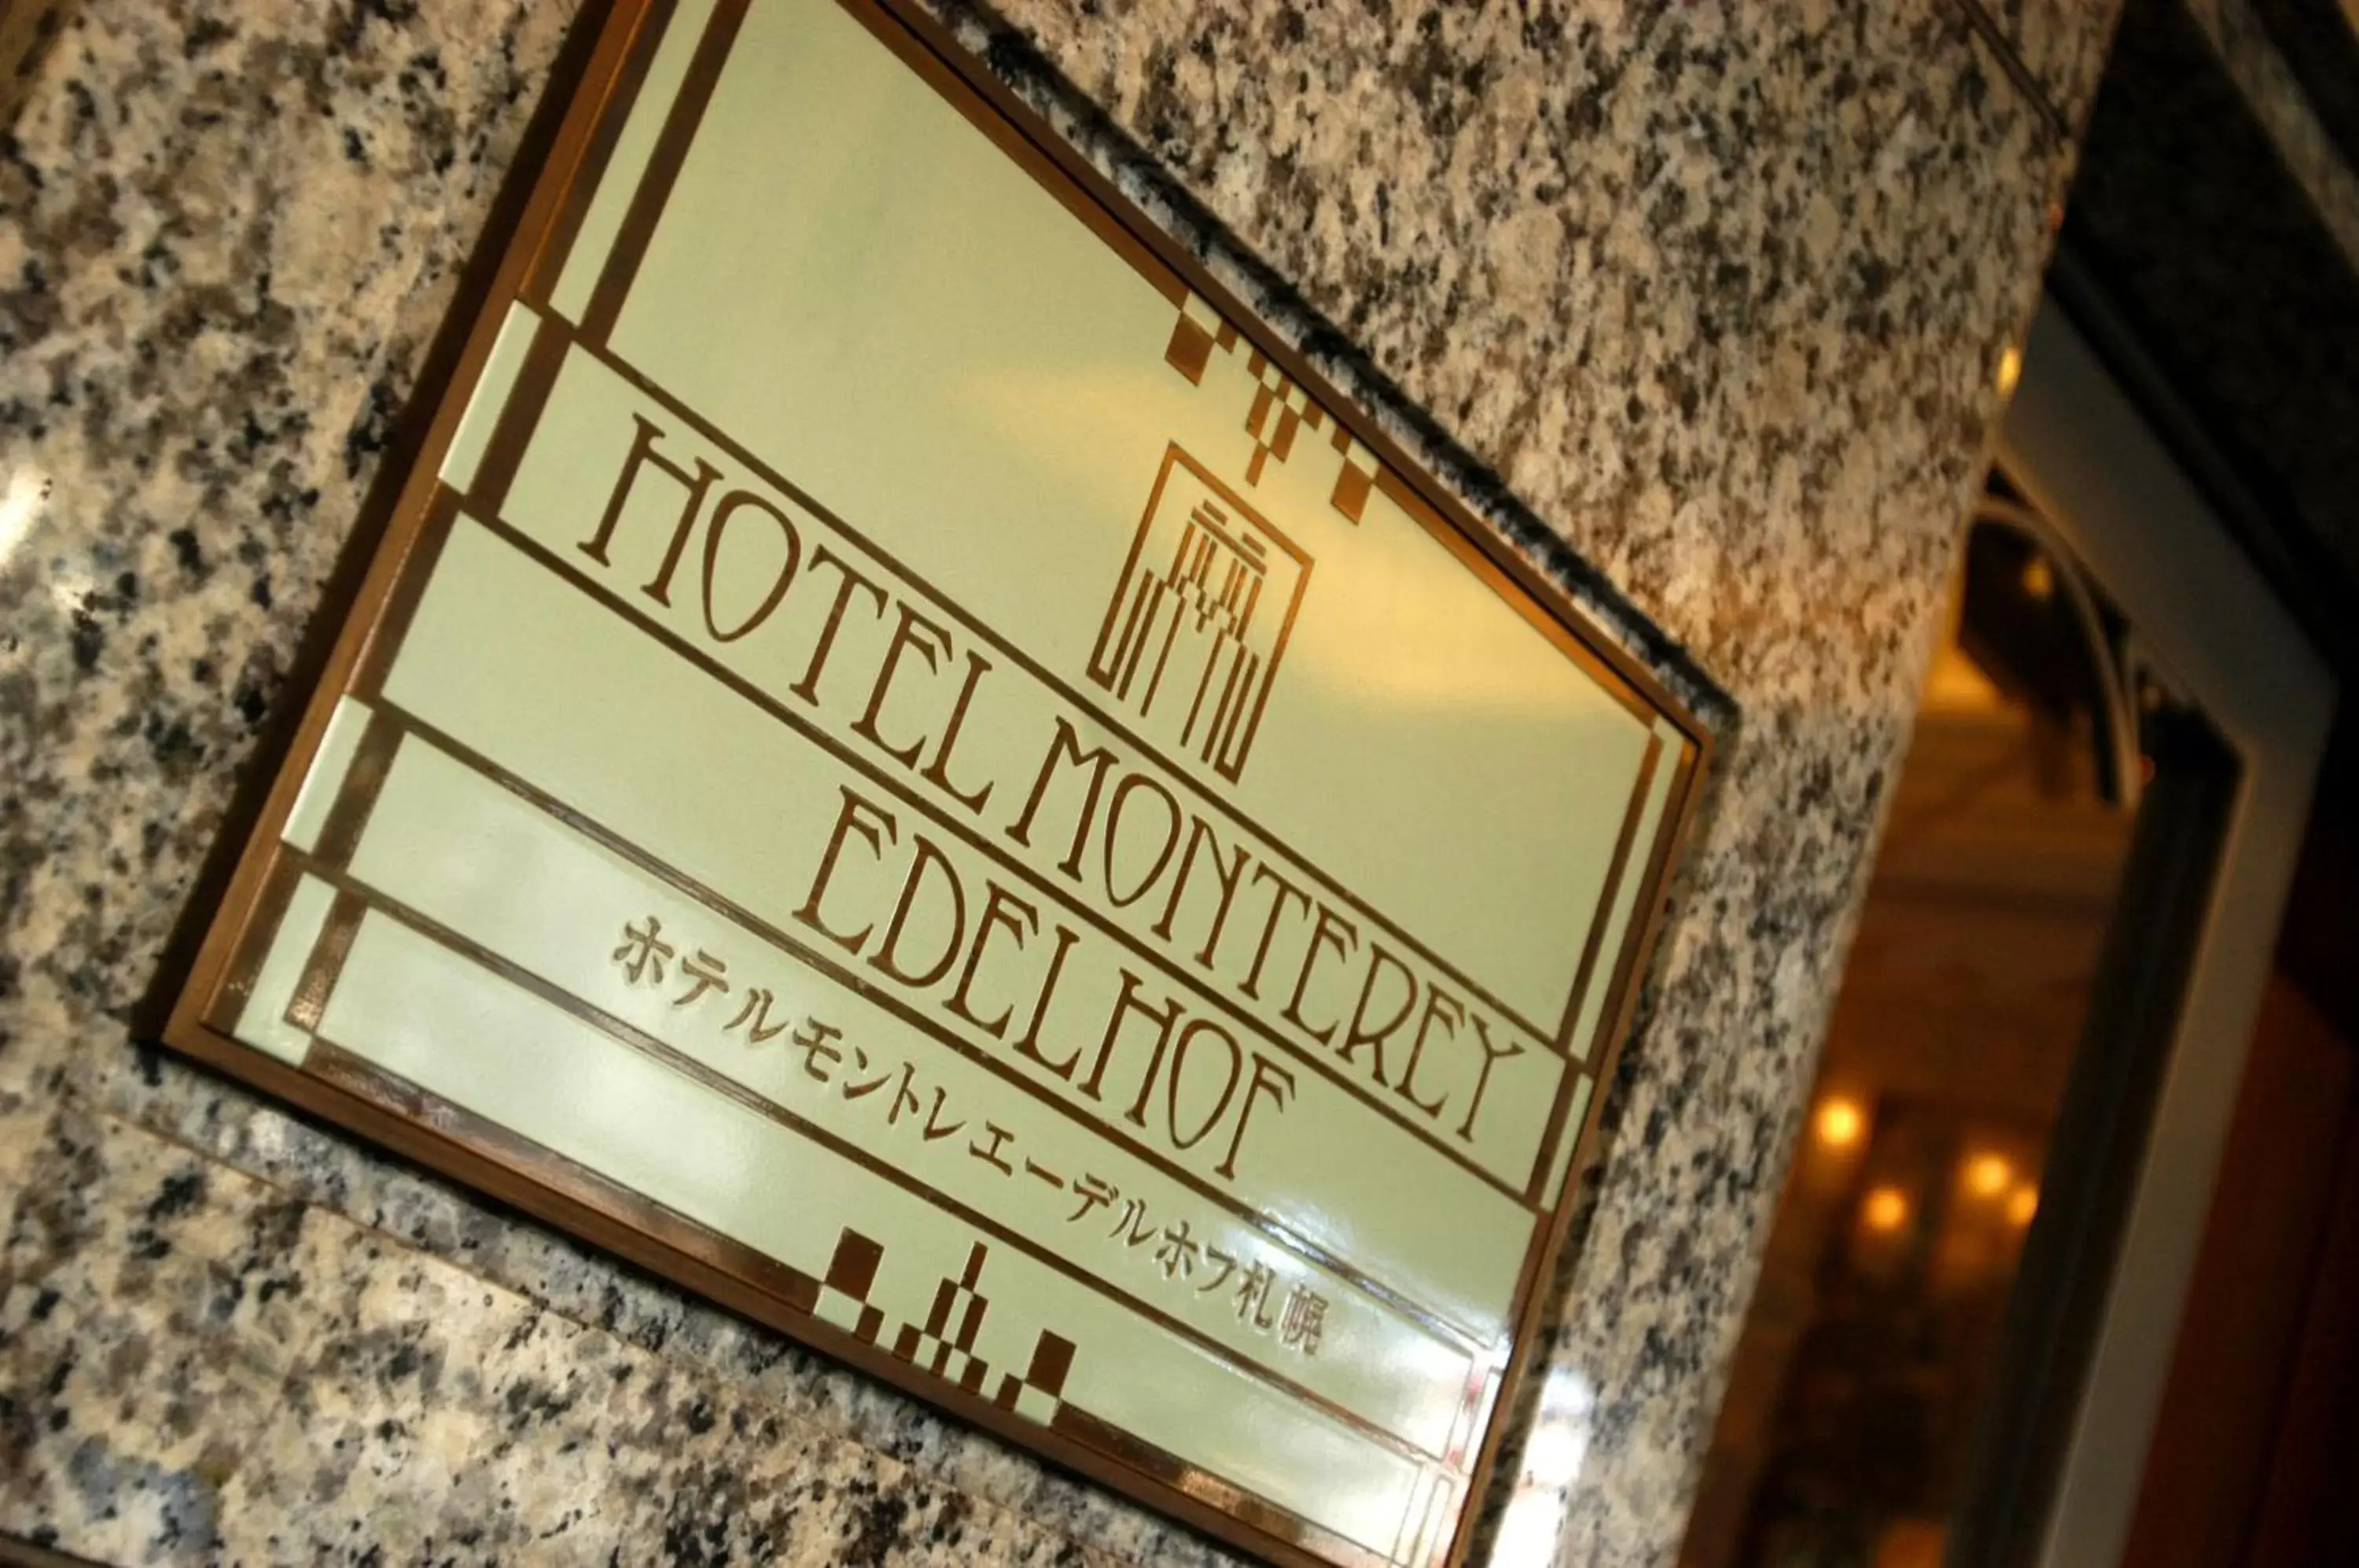 Facade/entrance in Hotel Monterey Edelhof Sapporo